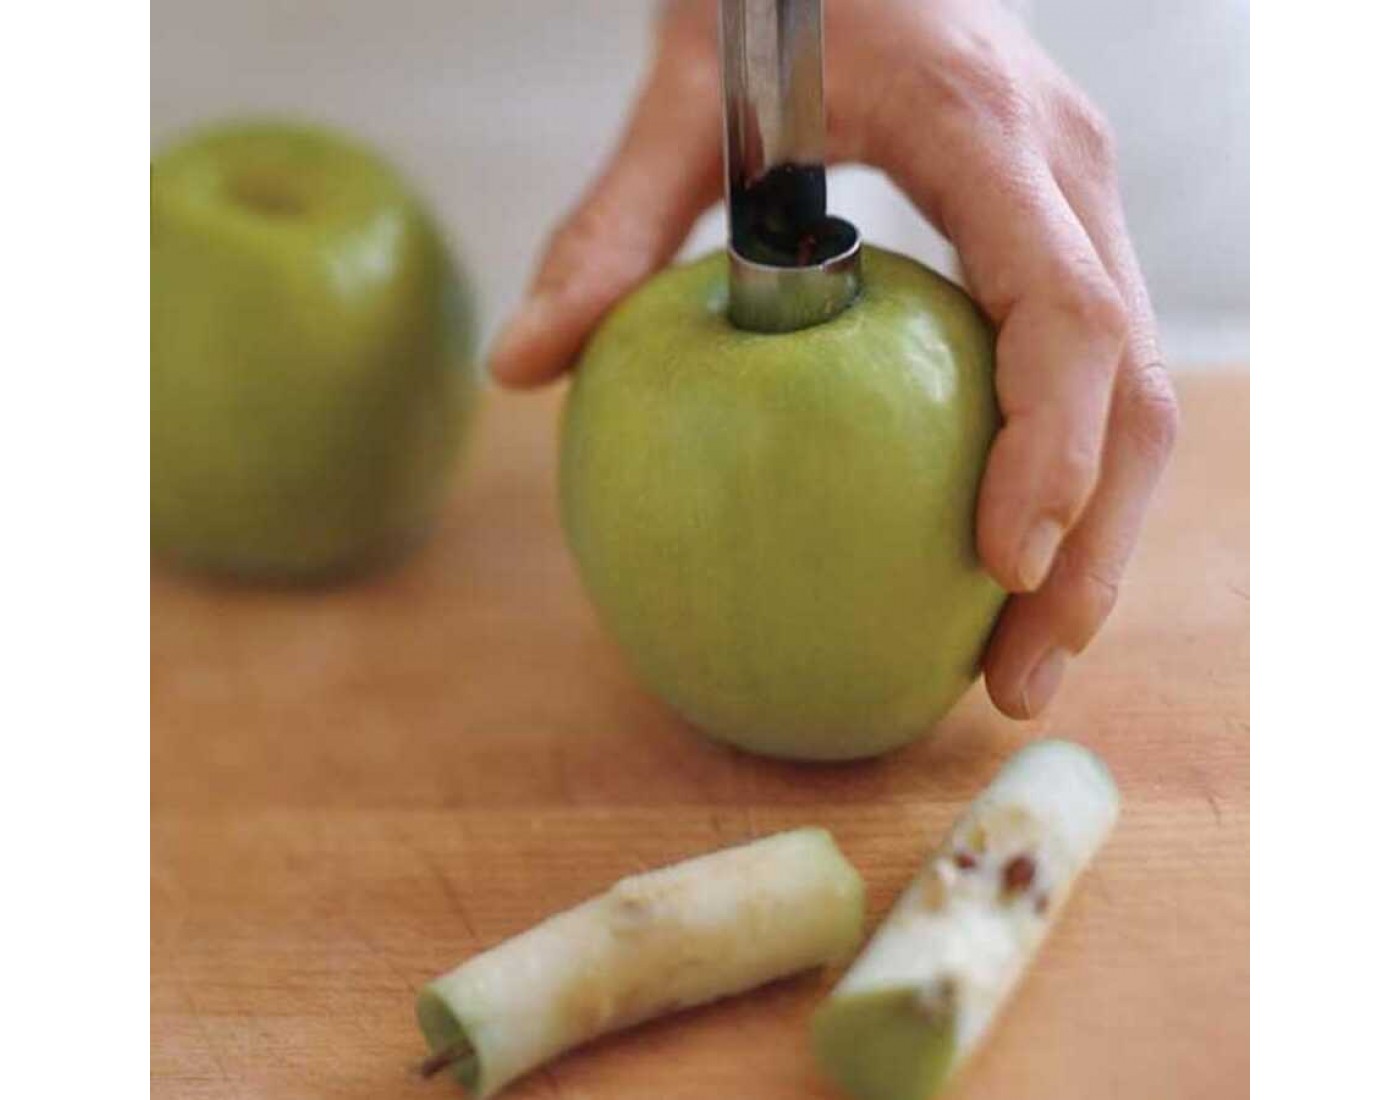 Для лучшего хранения яблоки протирают раствором хлорида